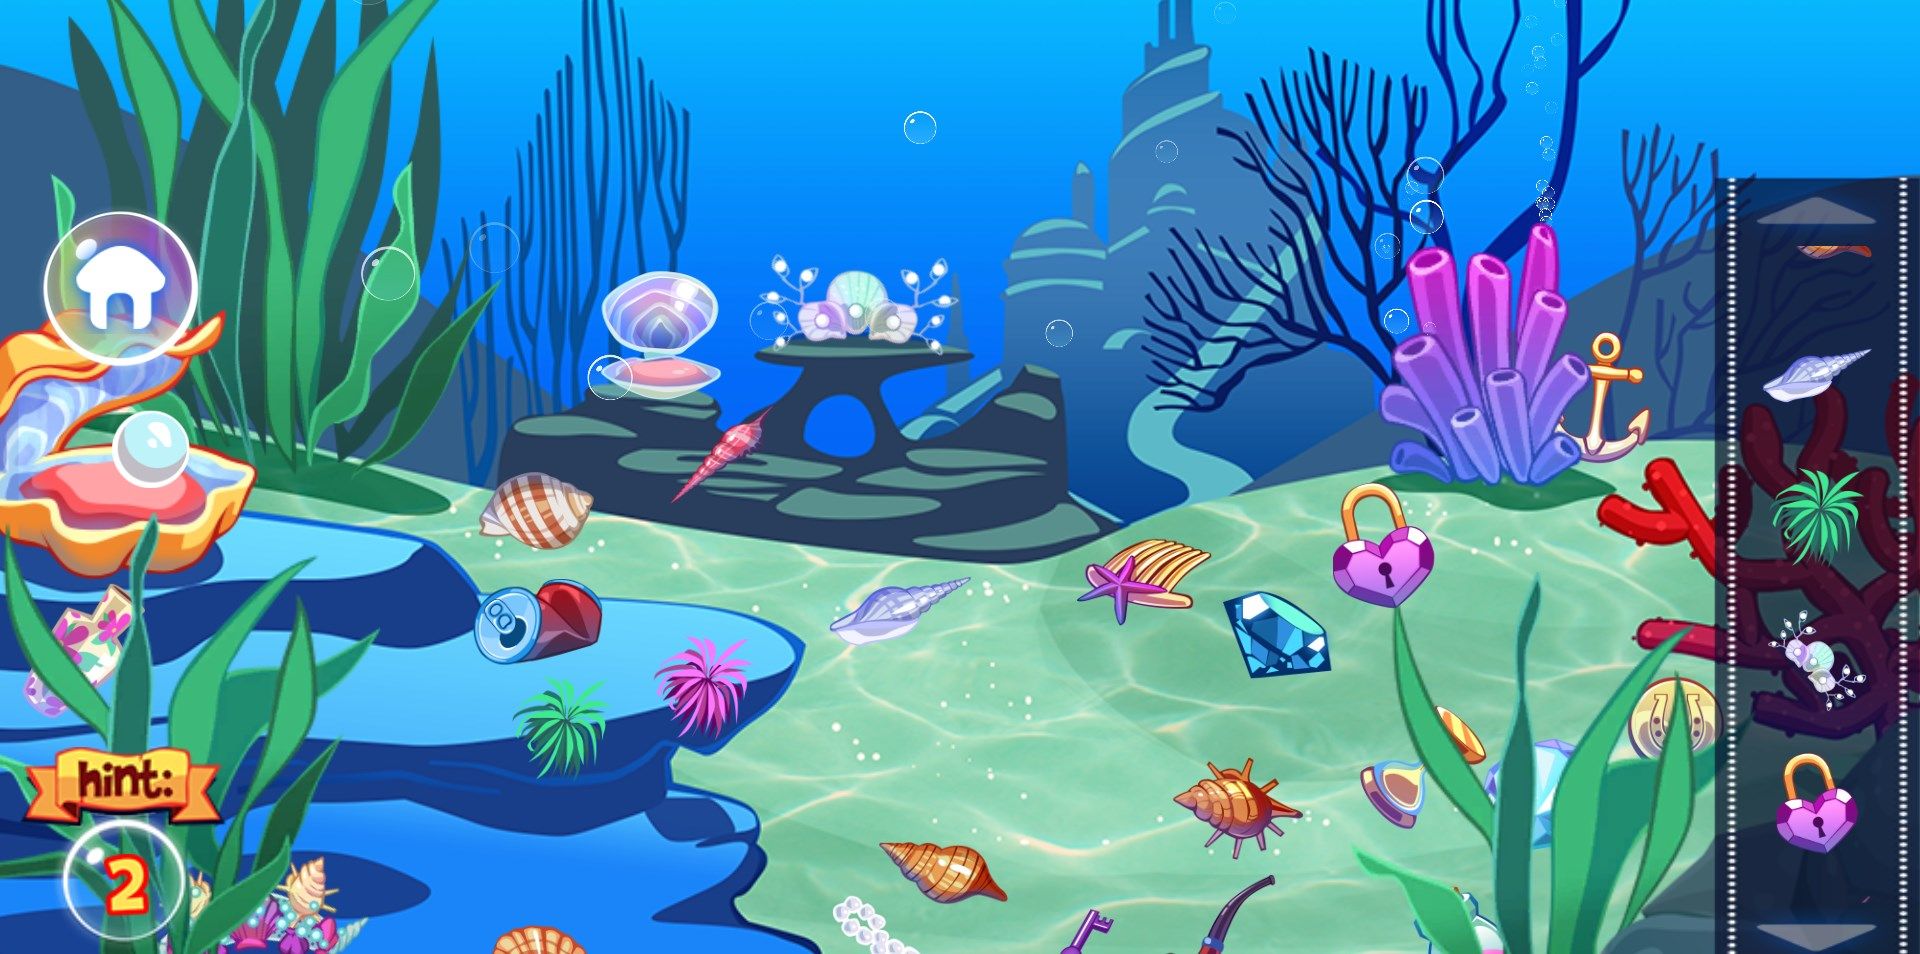 Mermaid Princess Makeup:Magic underwater games